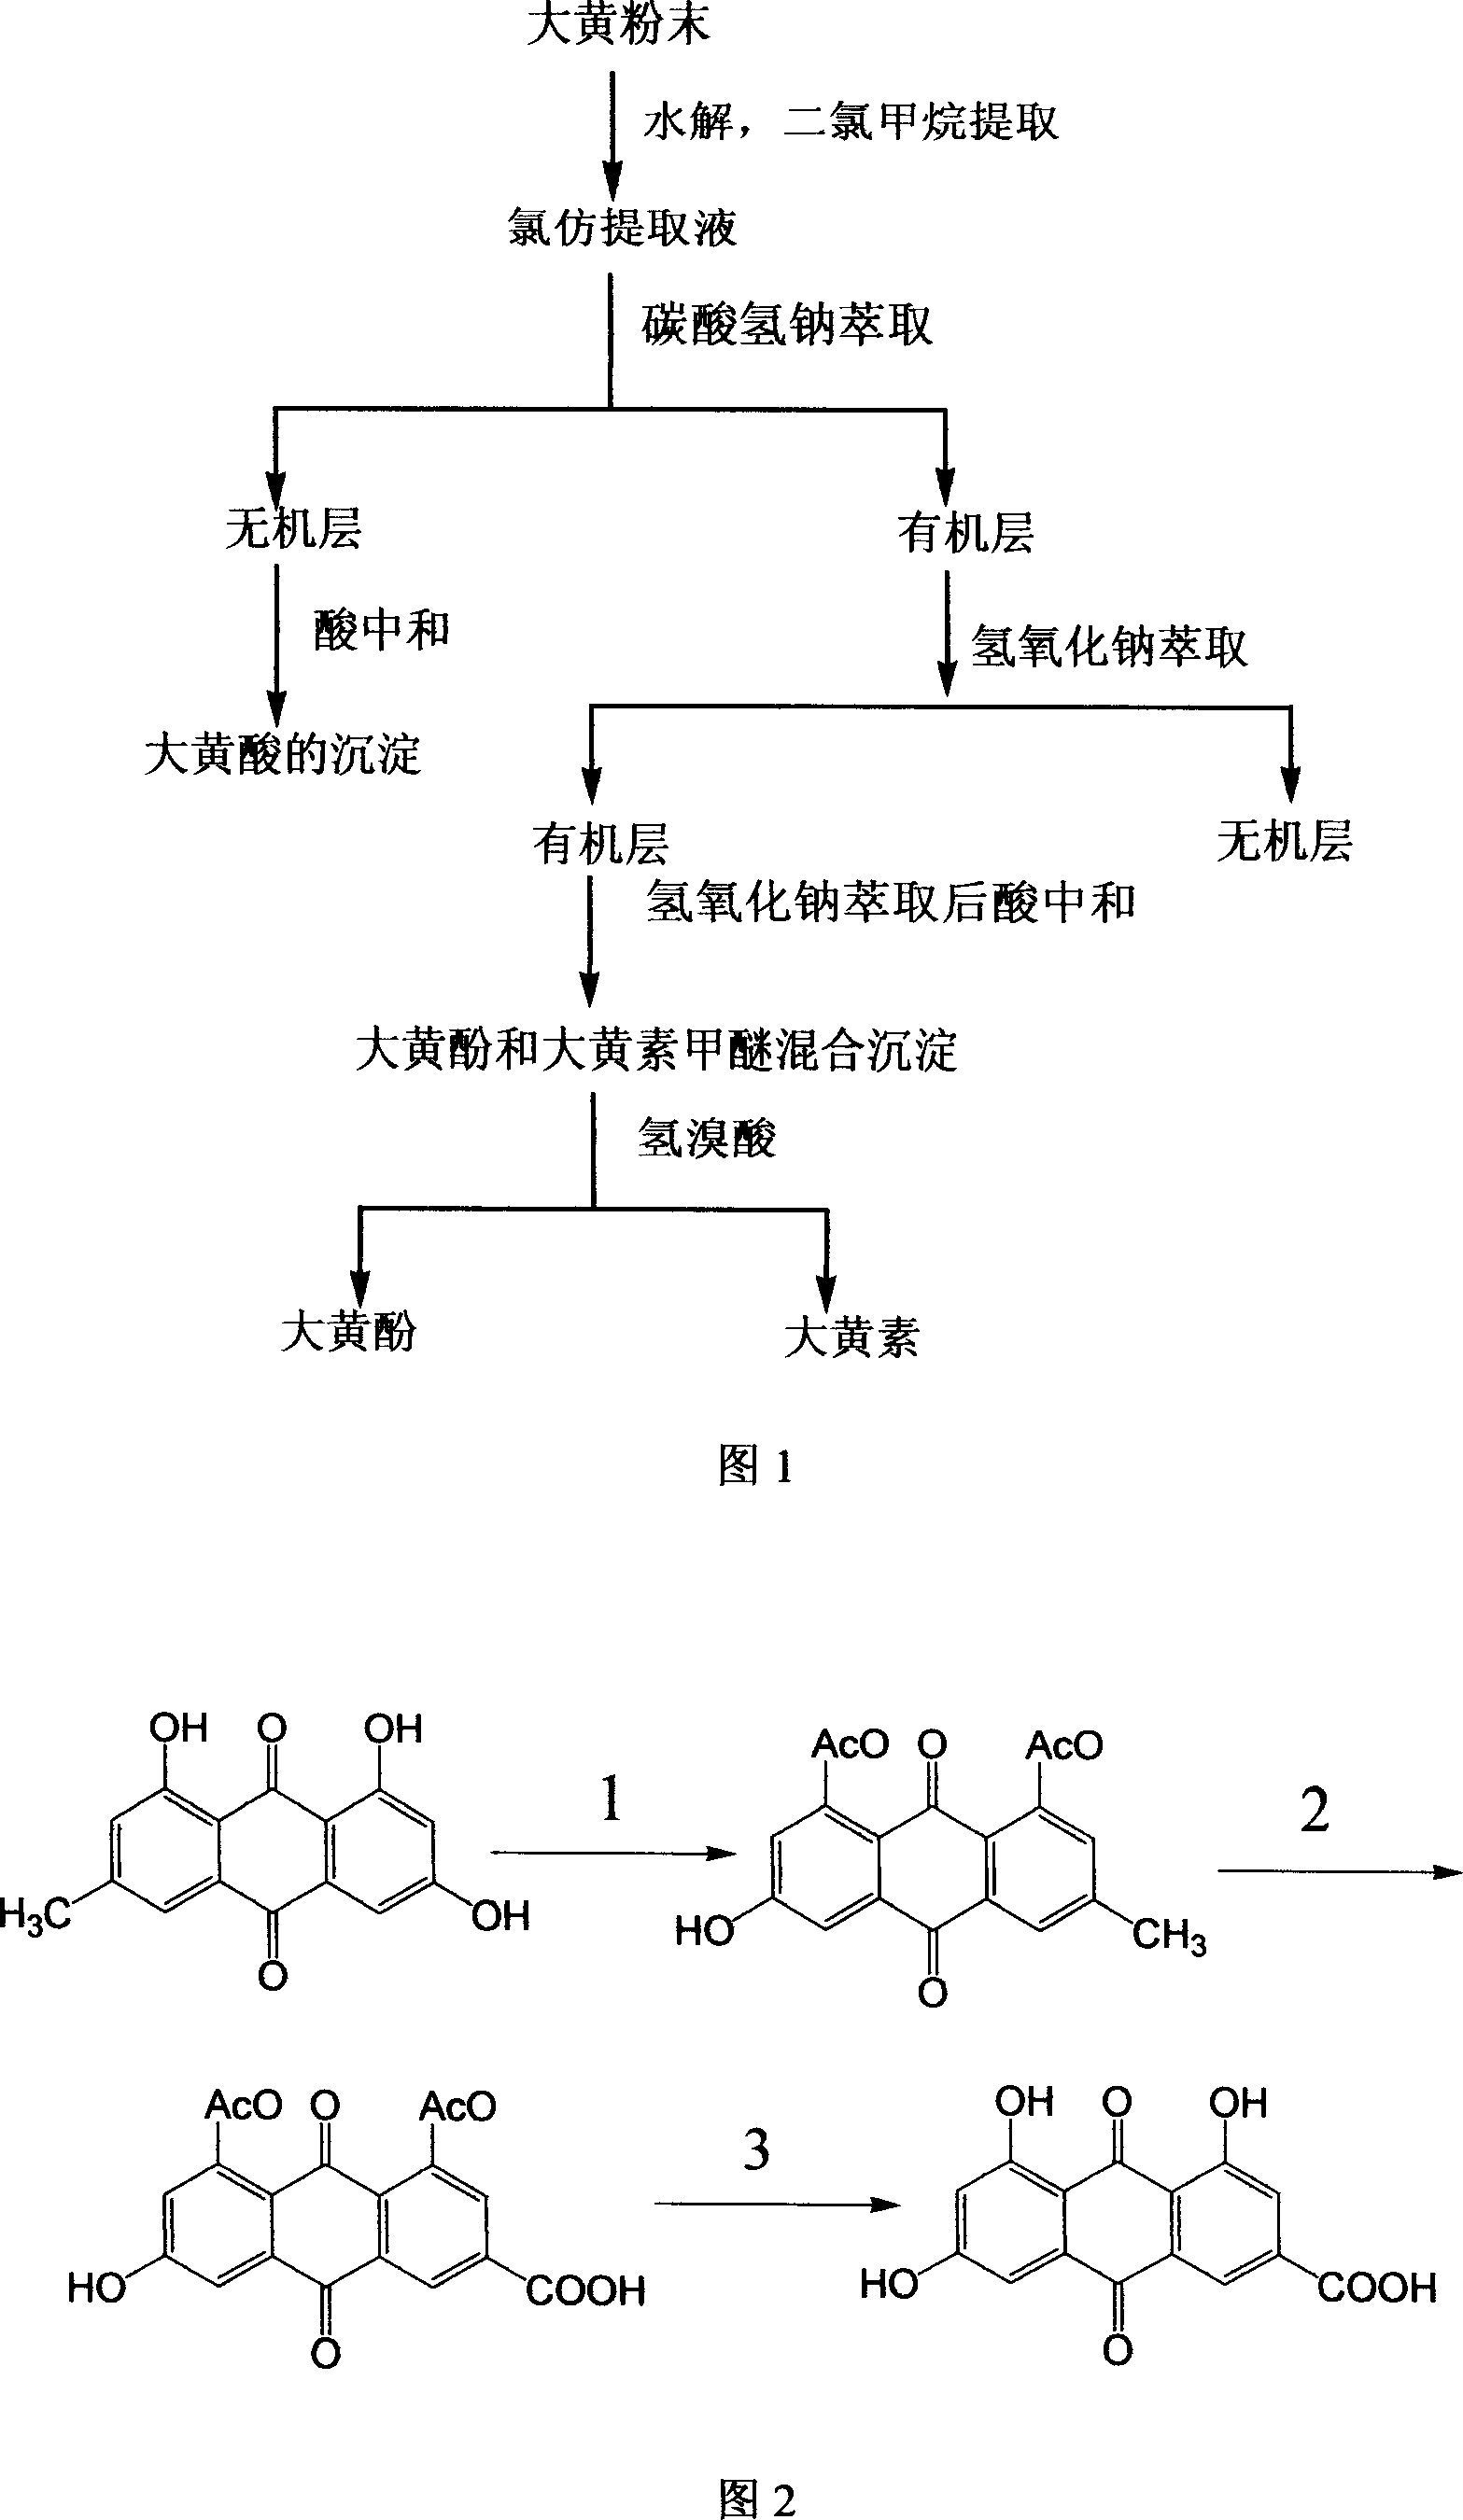 Process for preparing emodic acid